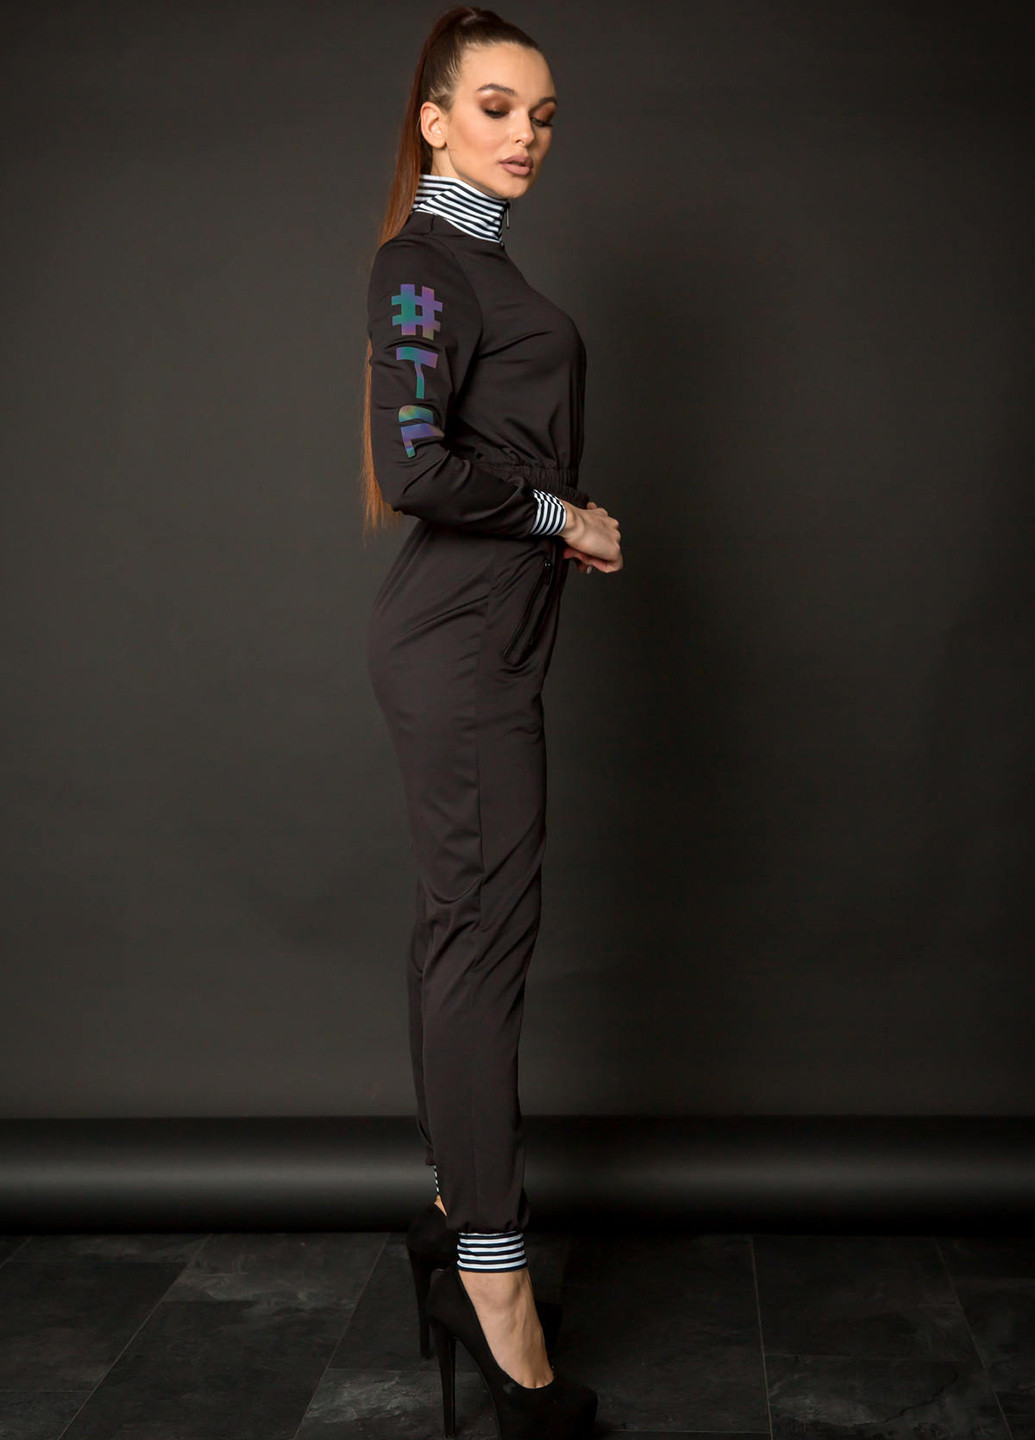 Комбинезон TOTALFIT комбинезон-брюки полоска чёрный кэжуал полиэстер, трикотаж